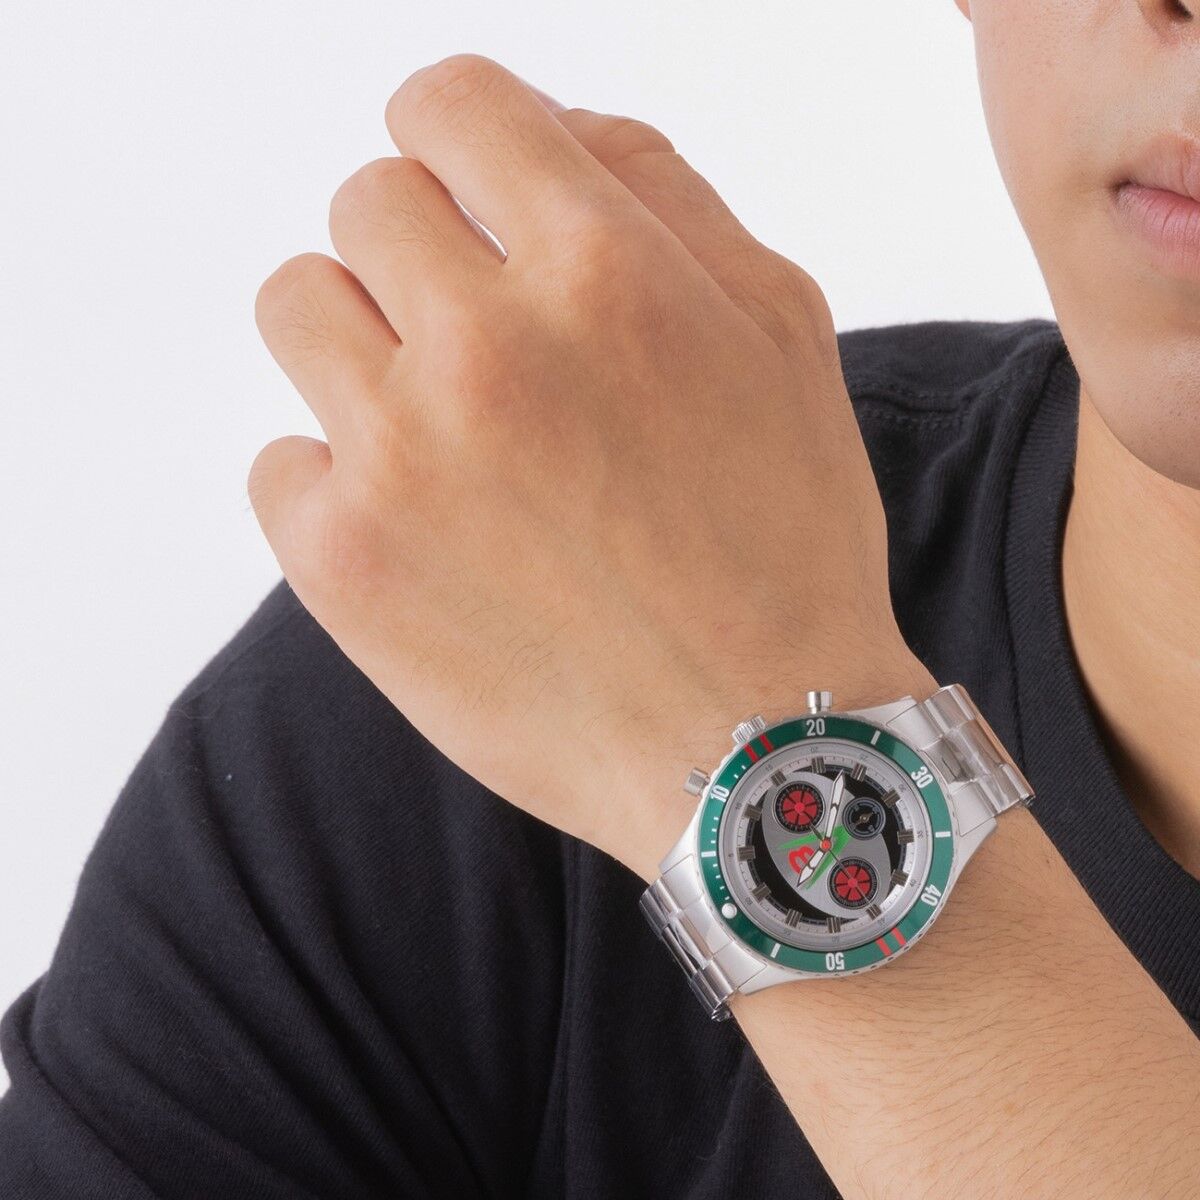 12,960円仮面ライダー V3 クロノグラフ 腕時計 Live Action Watch